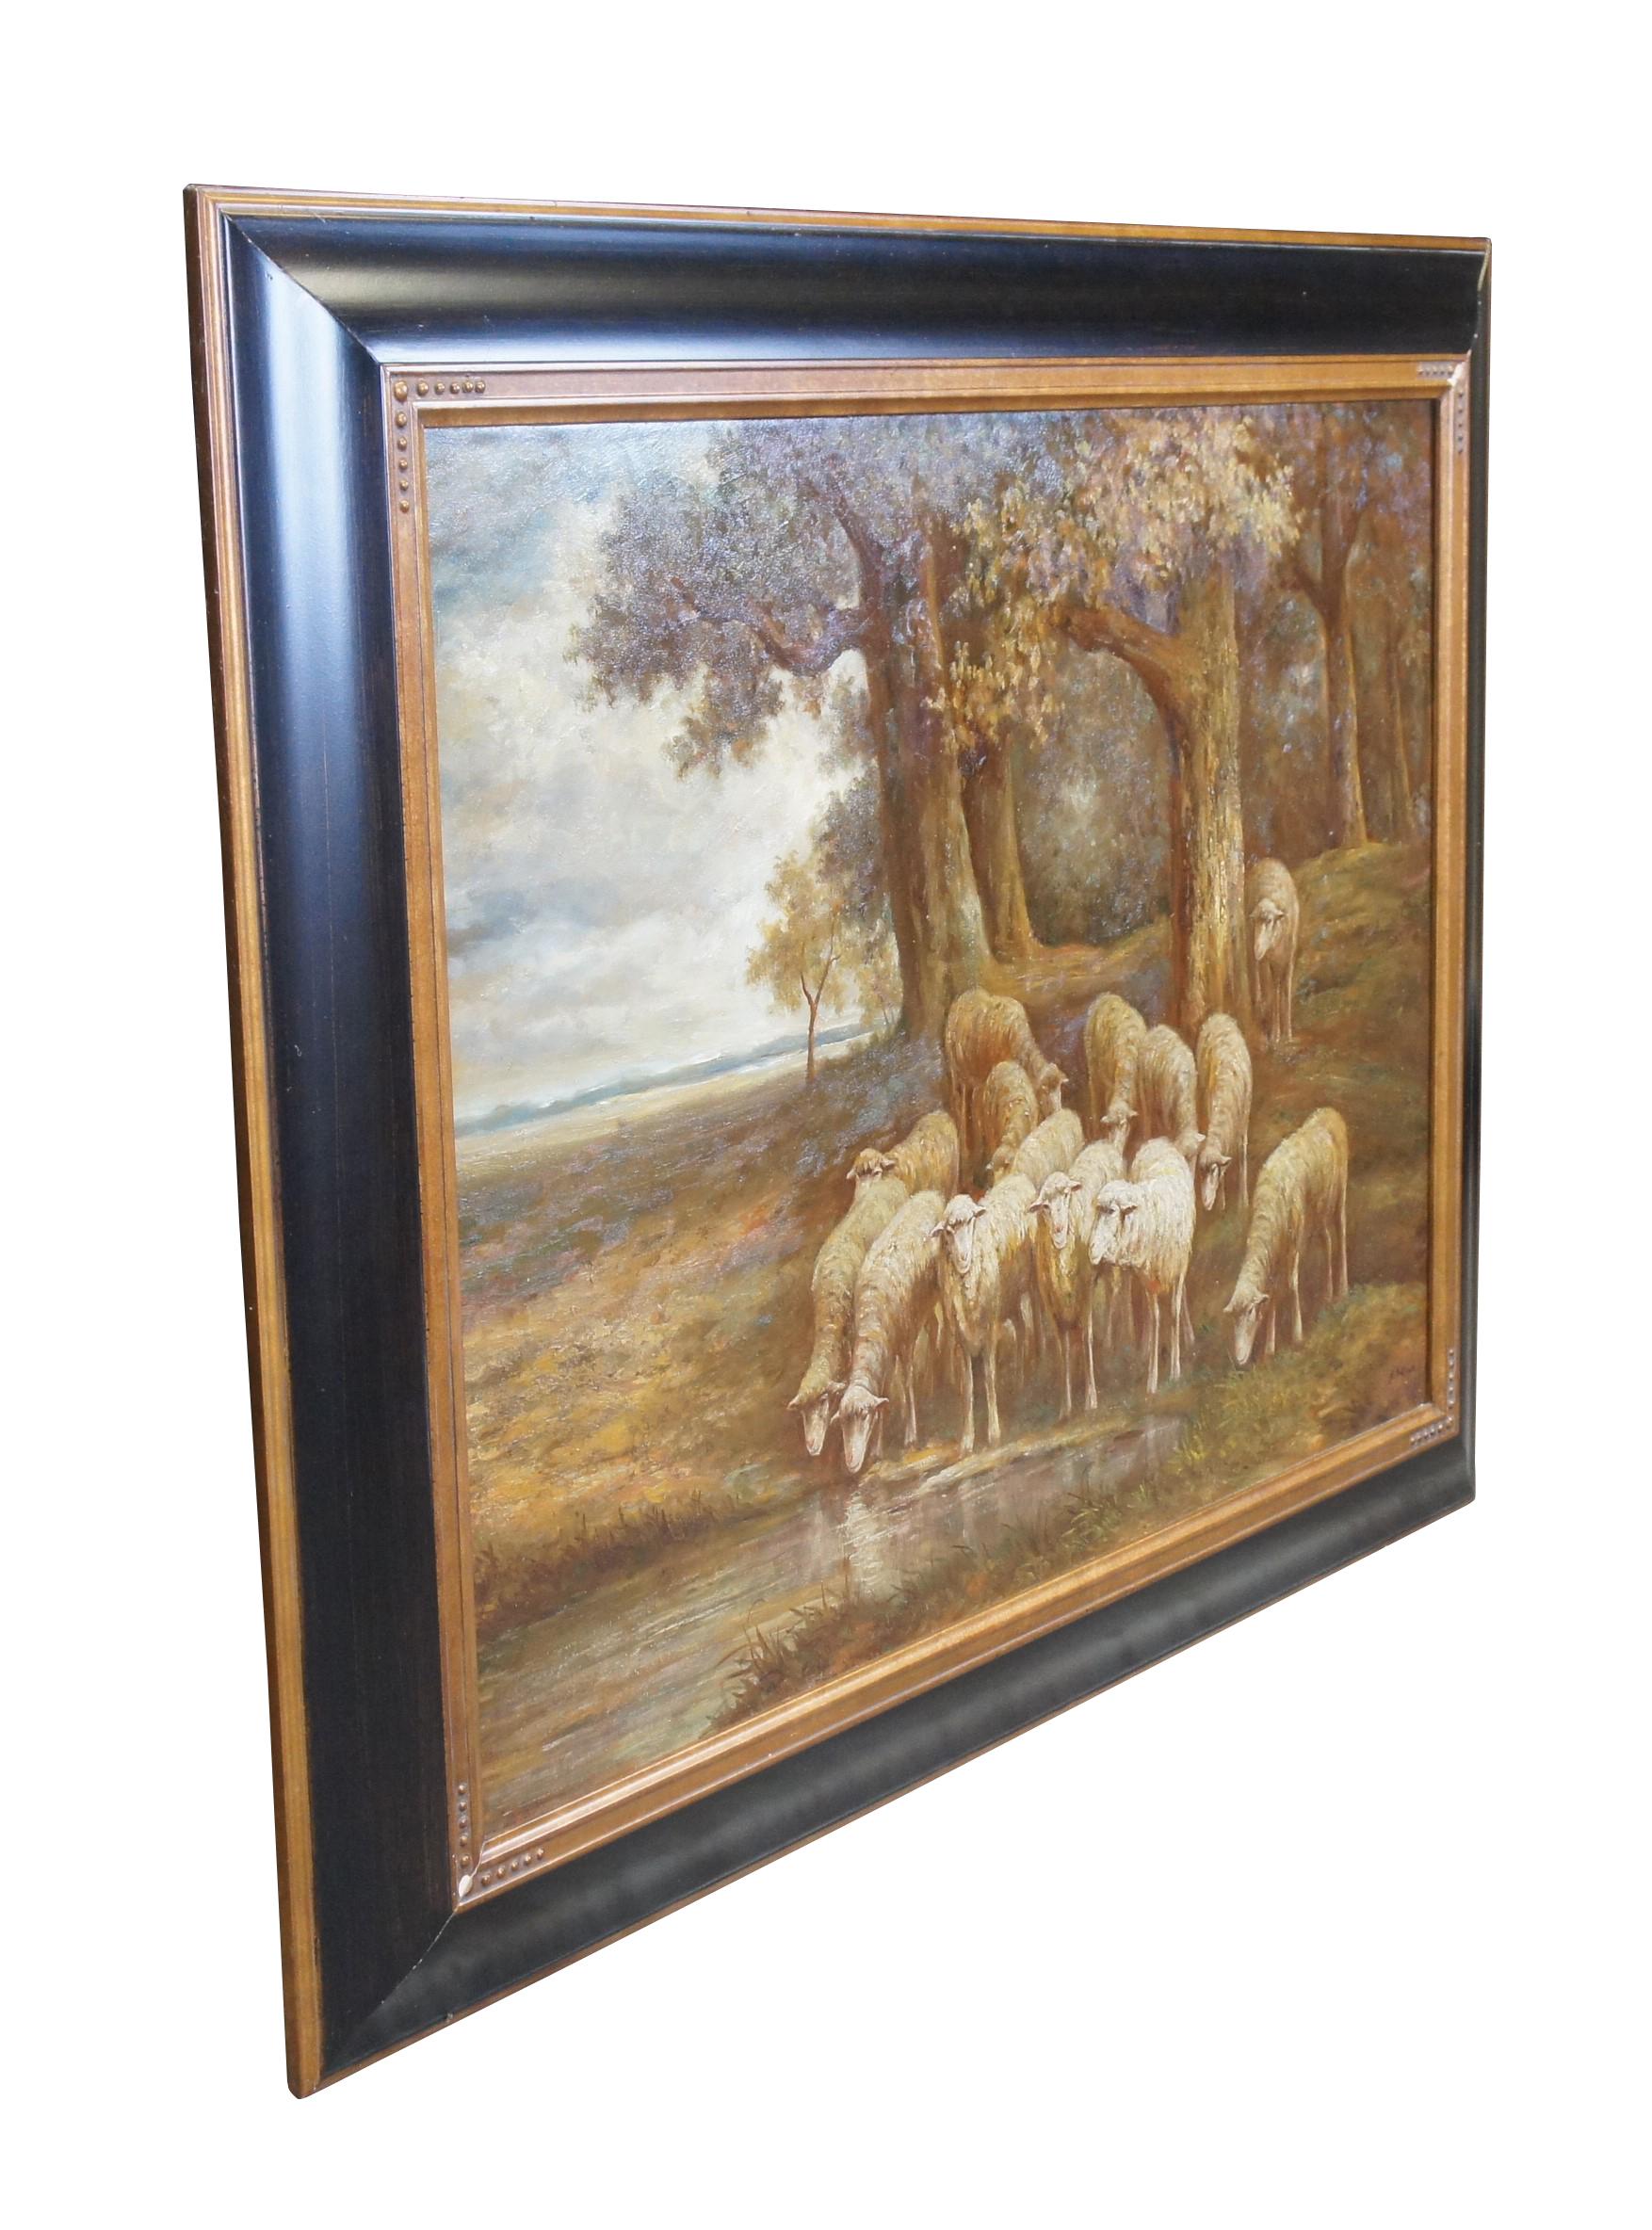 Très grande peinture à l'huile sur toile vintage de H Assteyn représentant un troupeau de moutons / agneaux broutant à l'orée d'une forêt.  Encadré dans un cadre en or ébonisé.

Dimensions :
38.5